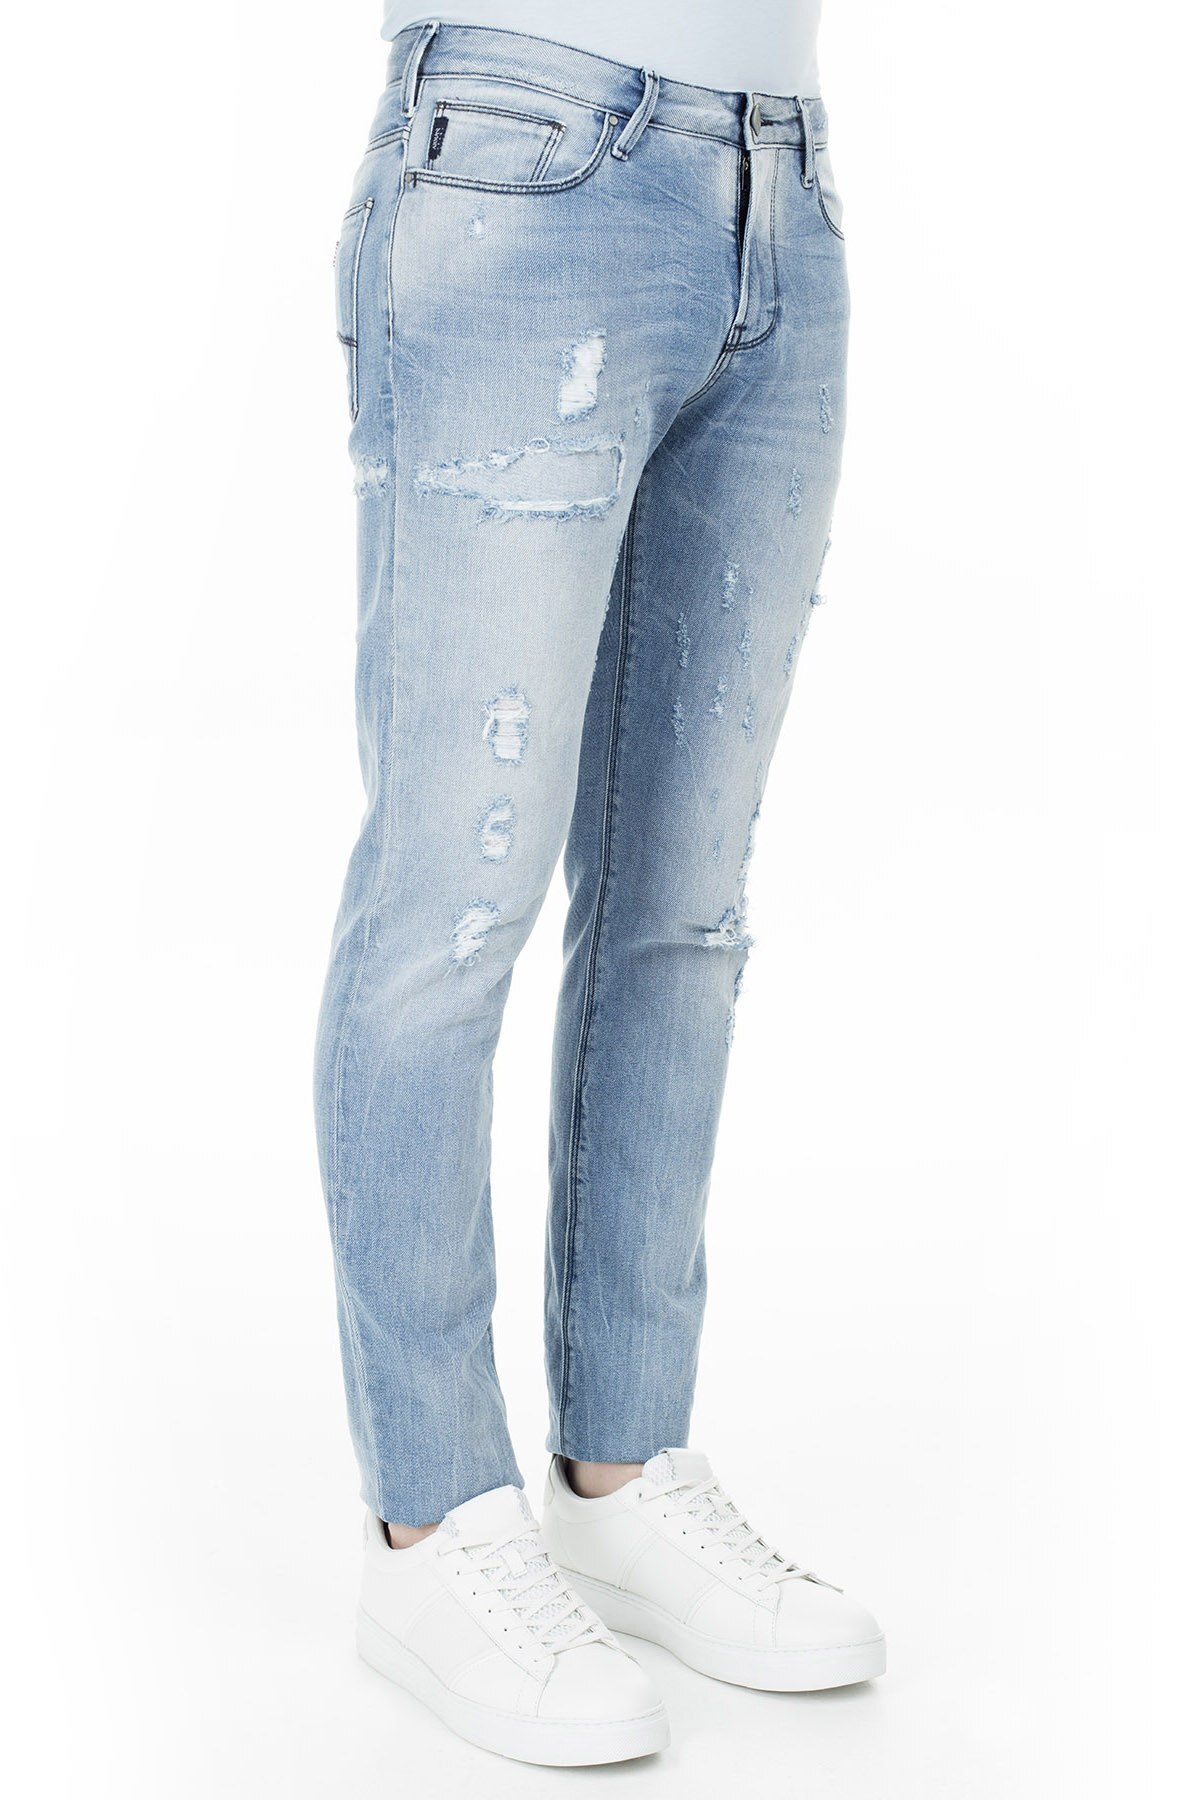 Armani J06 Jeans Erkek Kot Pantolon 3Y6J06 6D1VZ 1500 AÇIK MAVİ